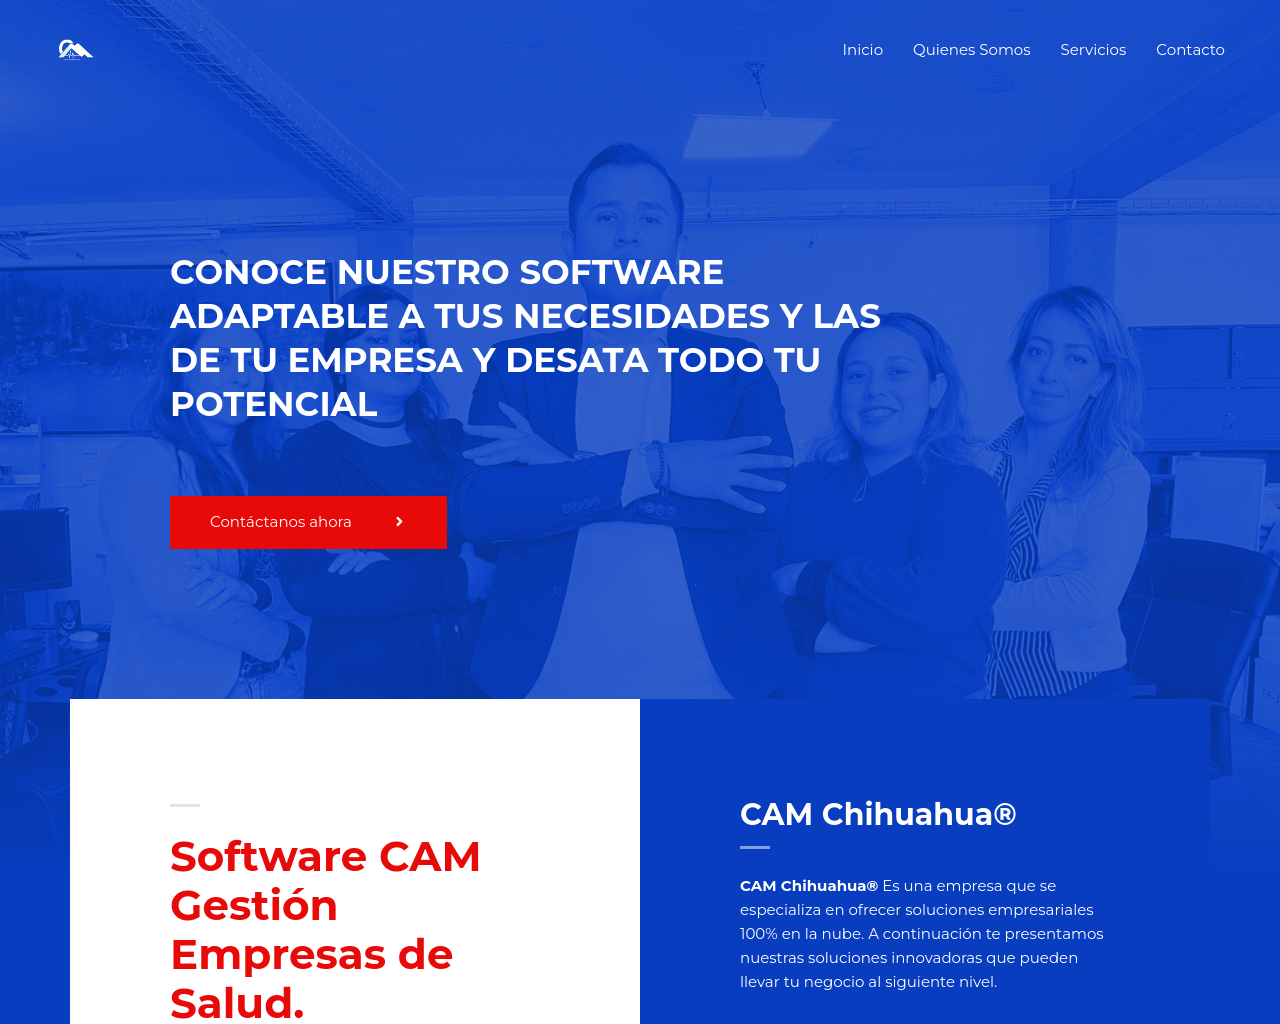 camchihuahua.com